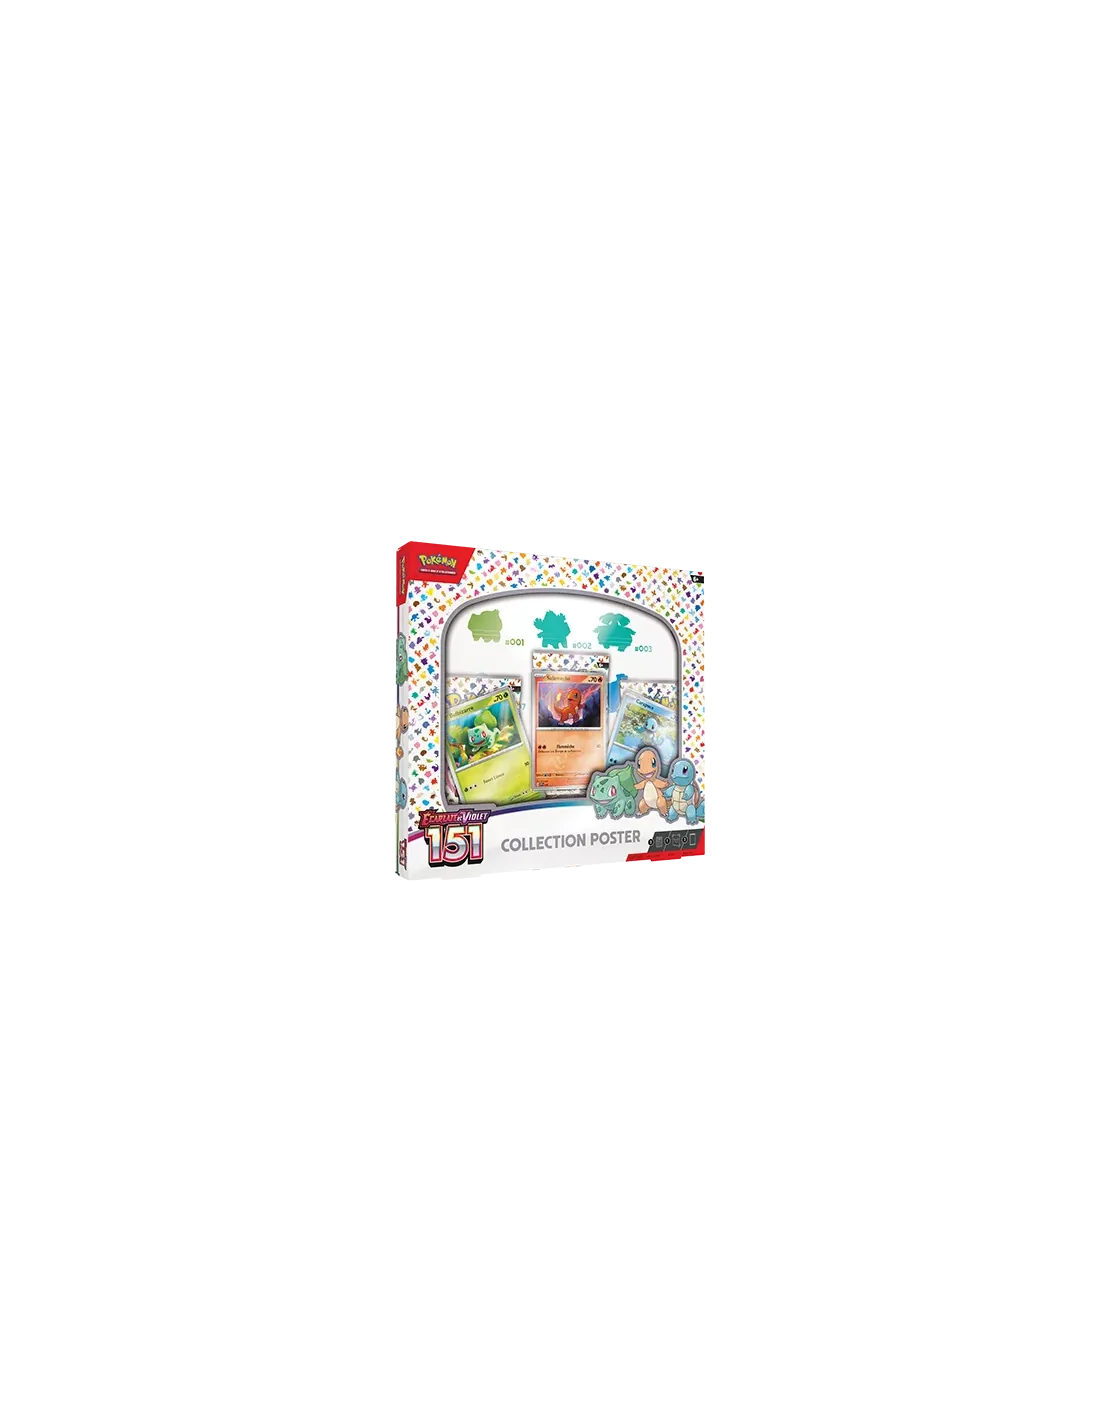 Coffret Collection Classeur - EV3.5 Écarlate et Violet 151 - Pokémon